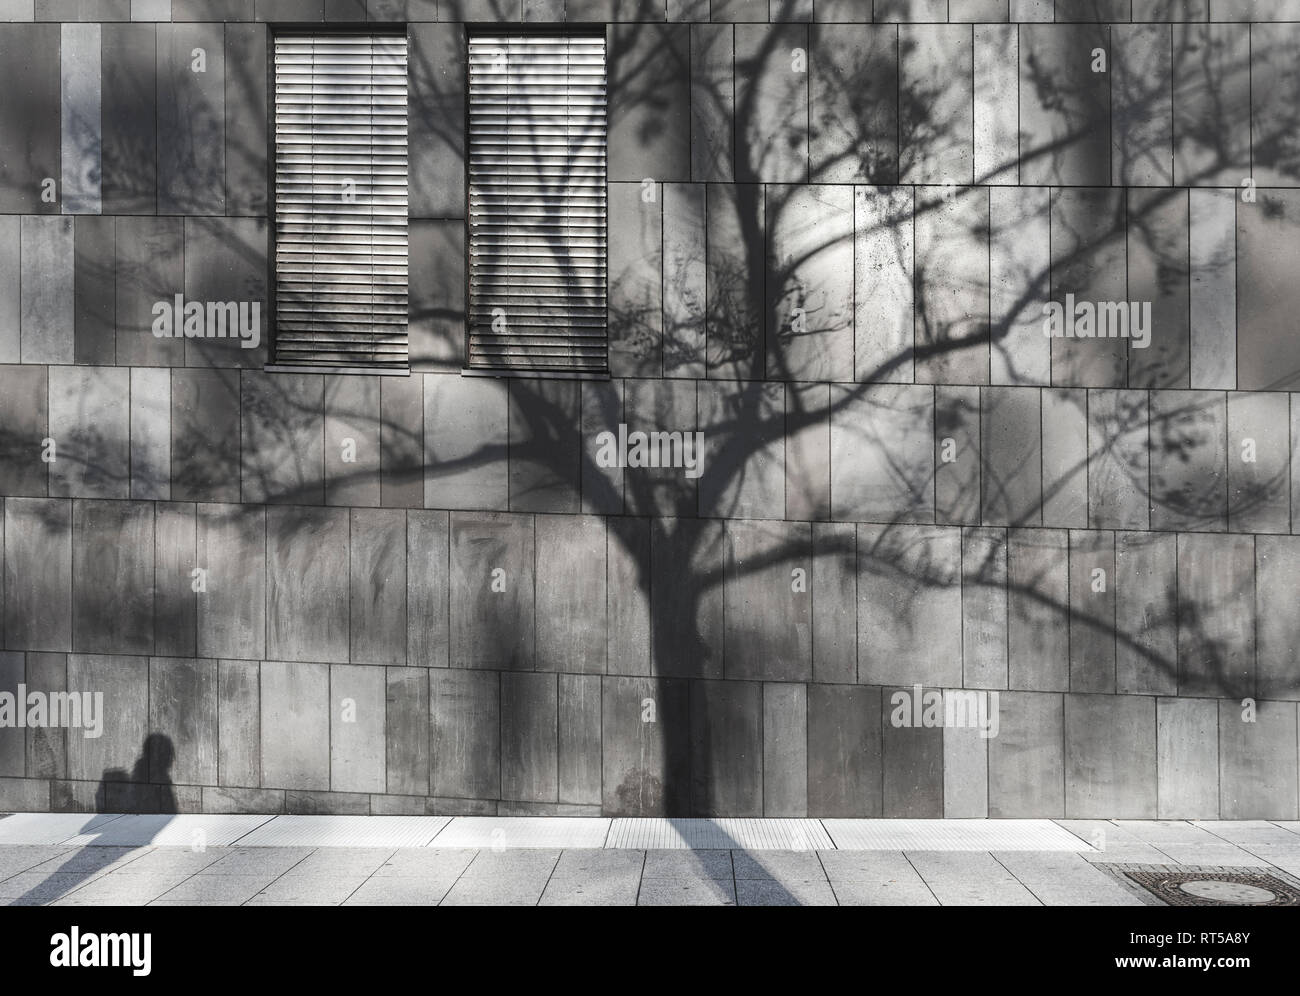 Ombra di un uomo e di una struttura riflessa sulla parete di un edificio moderno con finestre chiuse, nella città di Stoccarda, Germania. I problemi dell'ambiente. Foto Stock